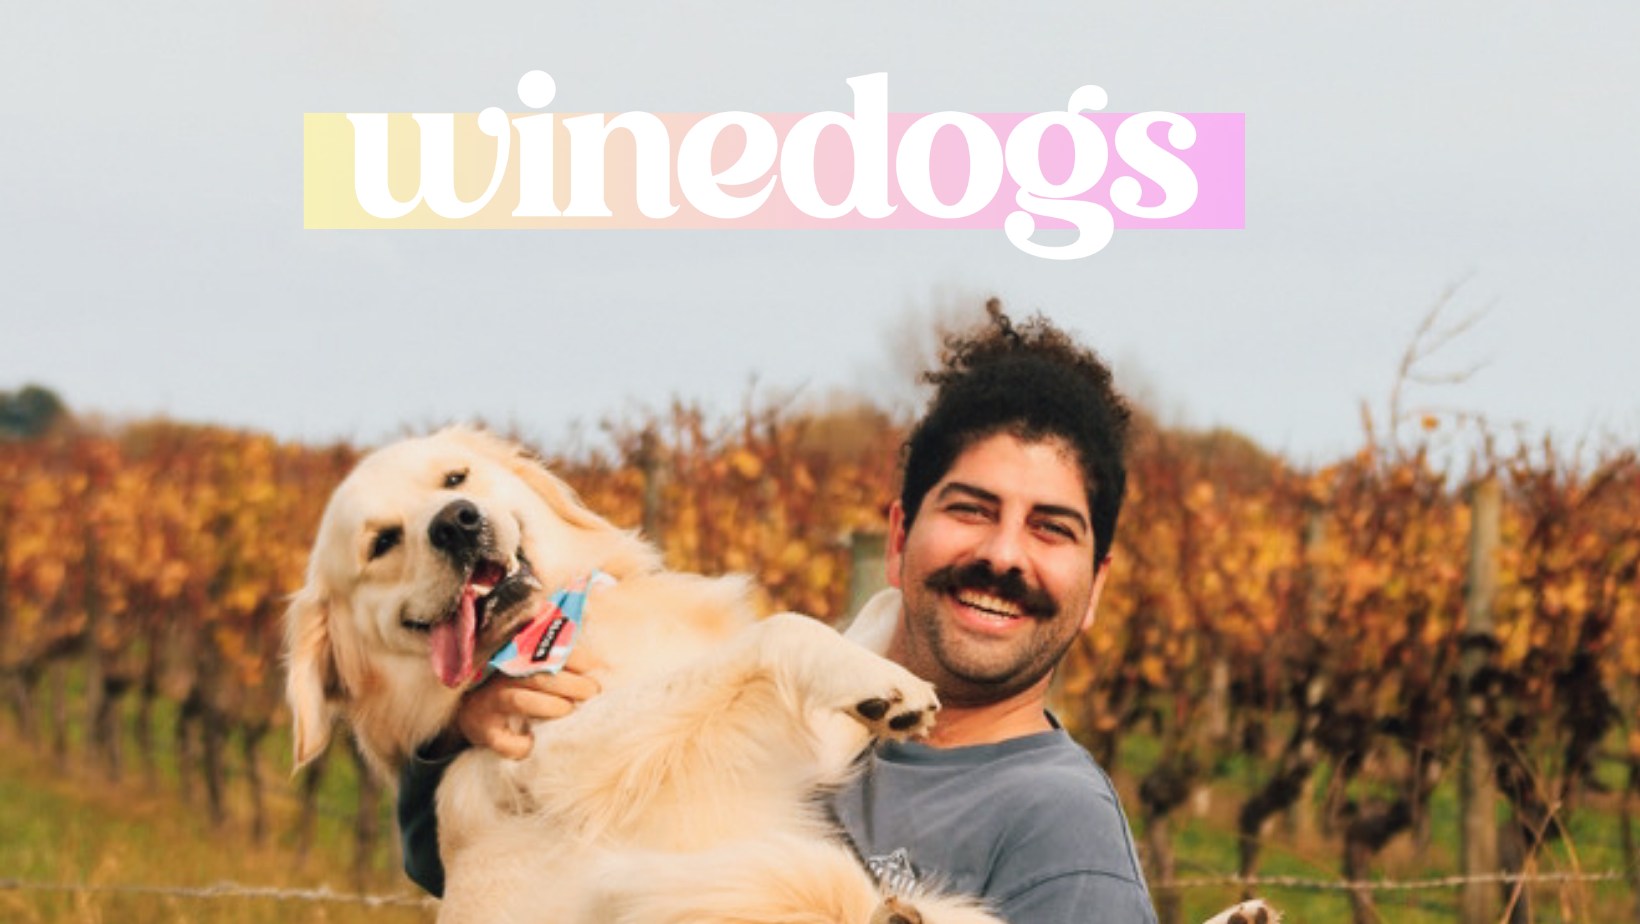 winedogs